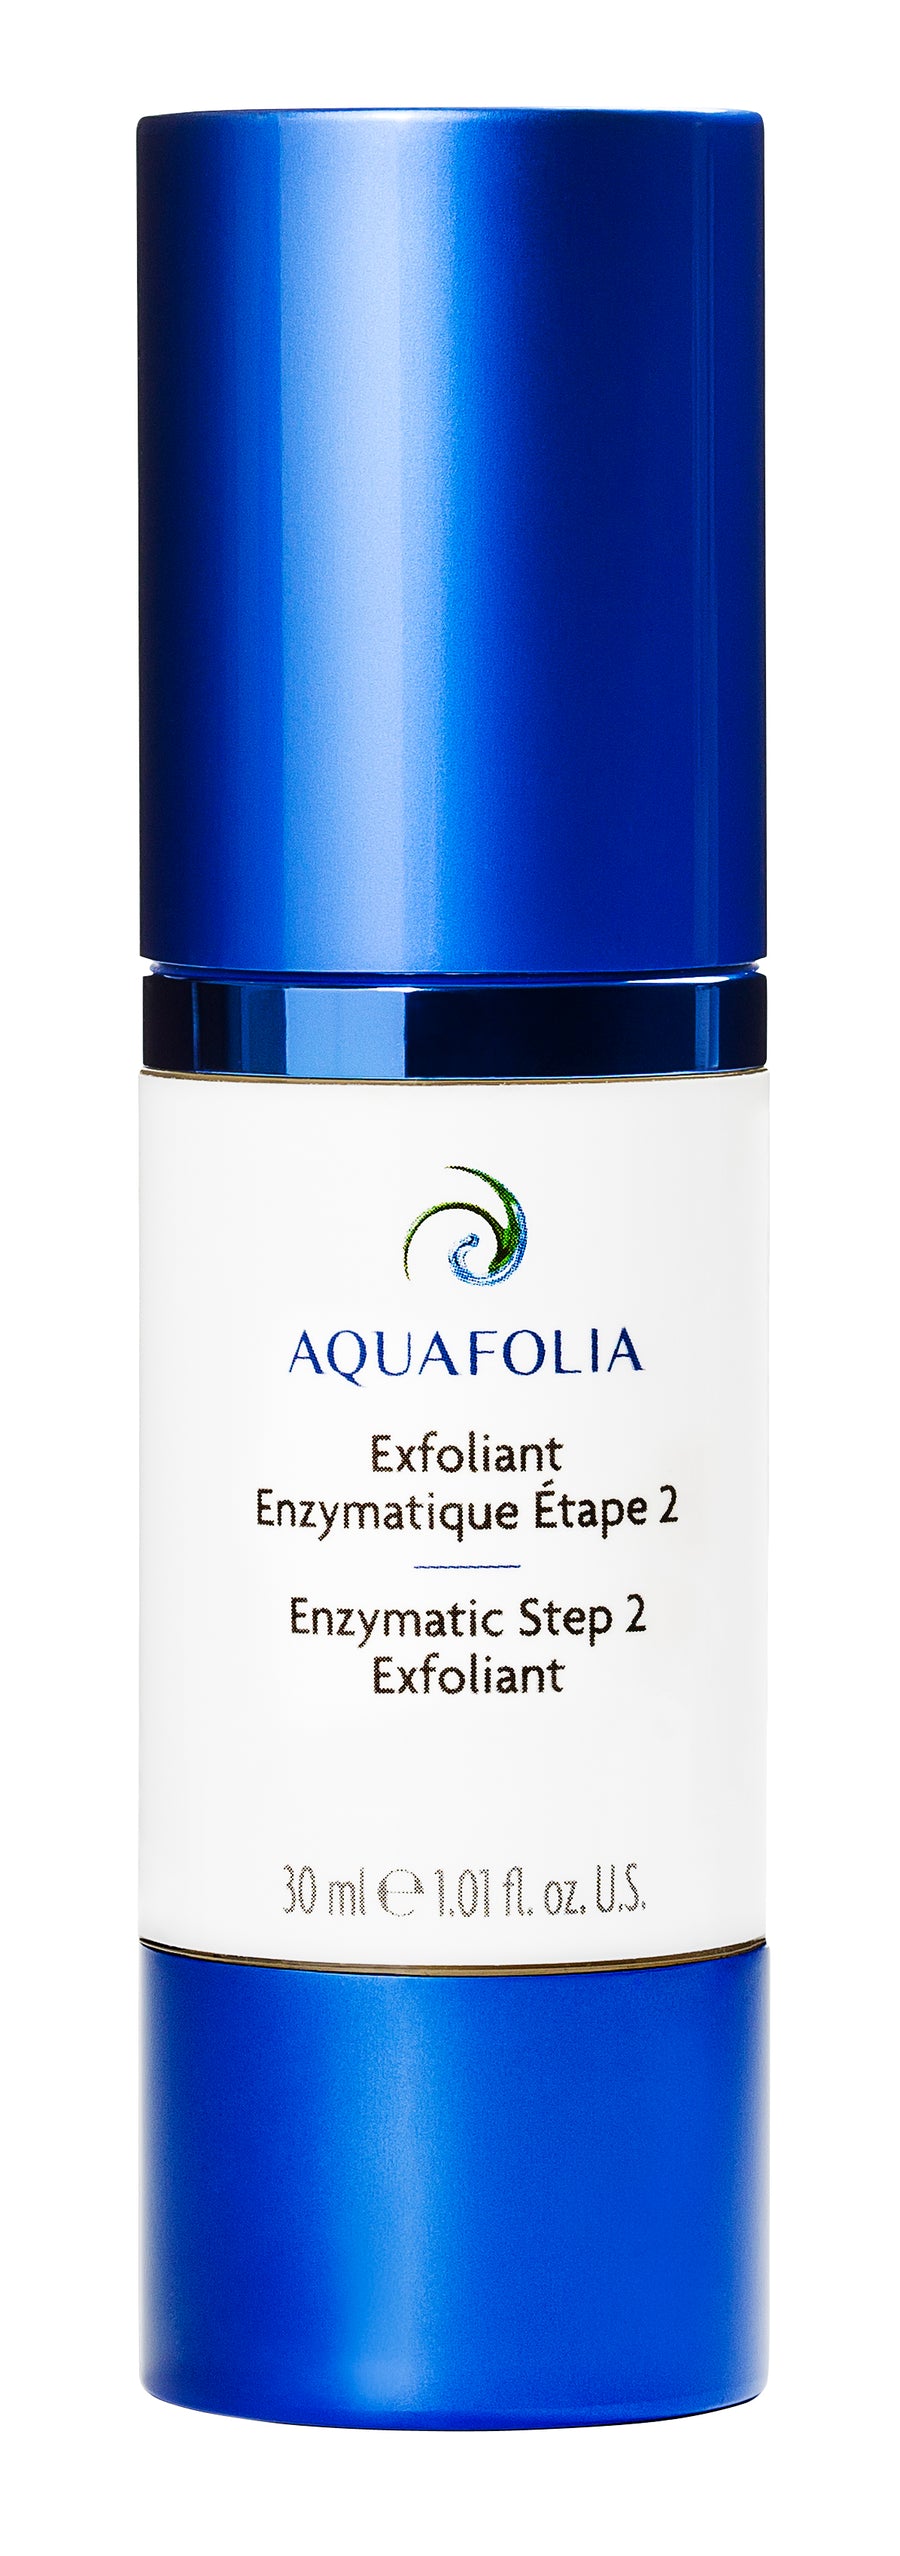 Aquafolia- Exfoliant Enzymatique Étape 2